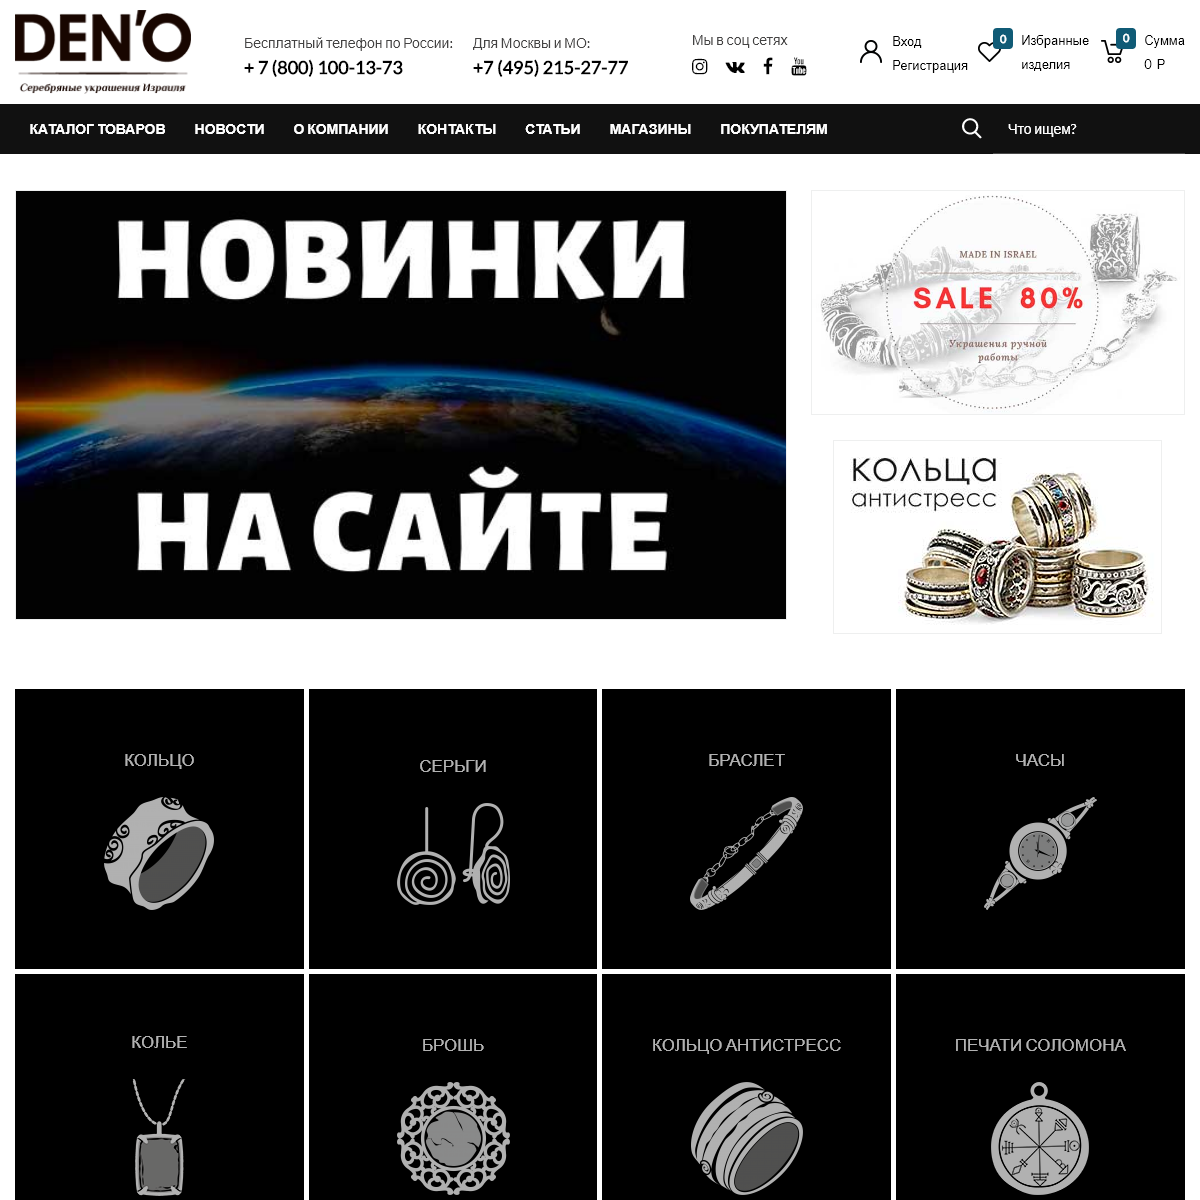 A complete backup of deno-silver.ru